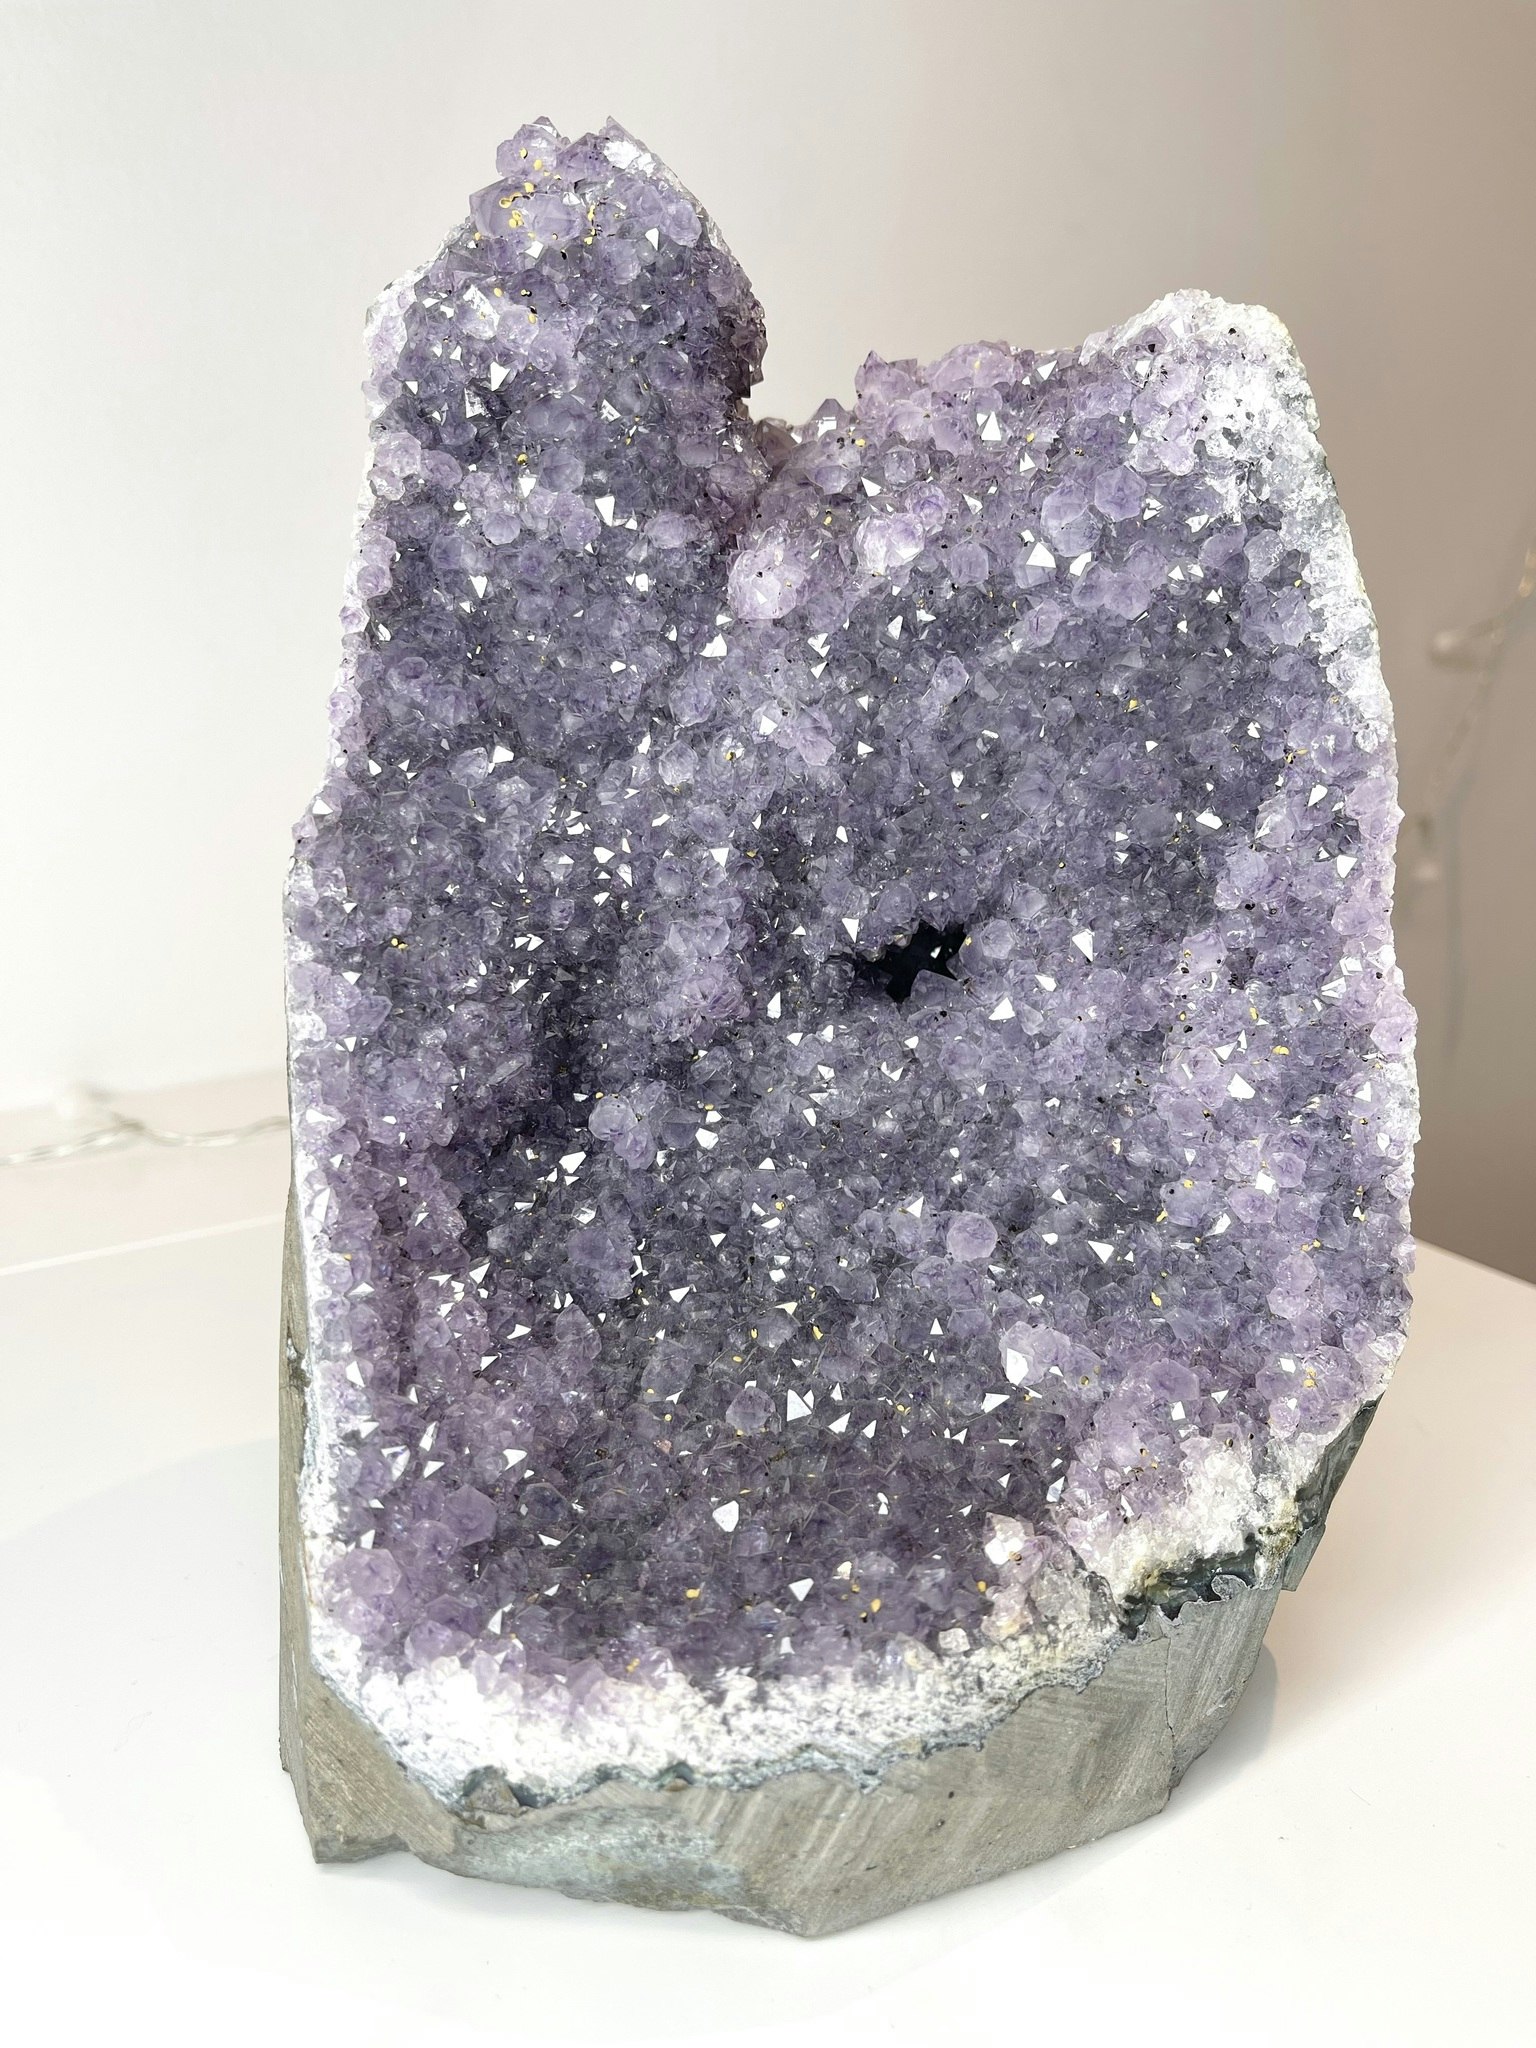 Lila ametistkluster med skimrande kristaller; en naturlig sten som symboliserar inre frid, skydd och healing. Står på en vit bakgrund.